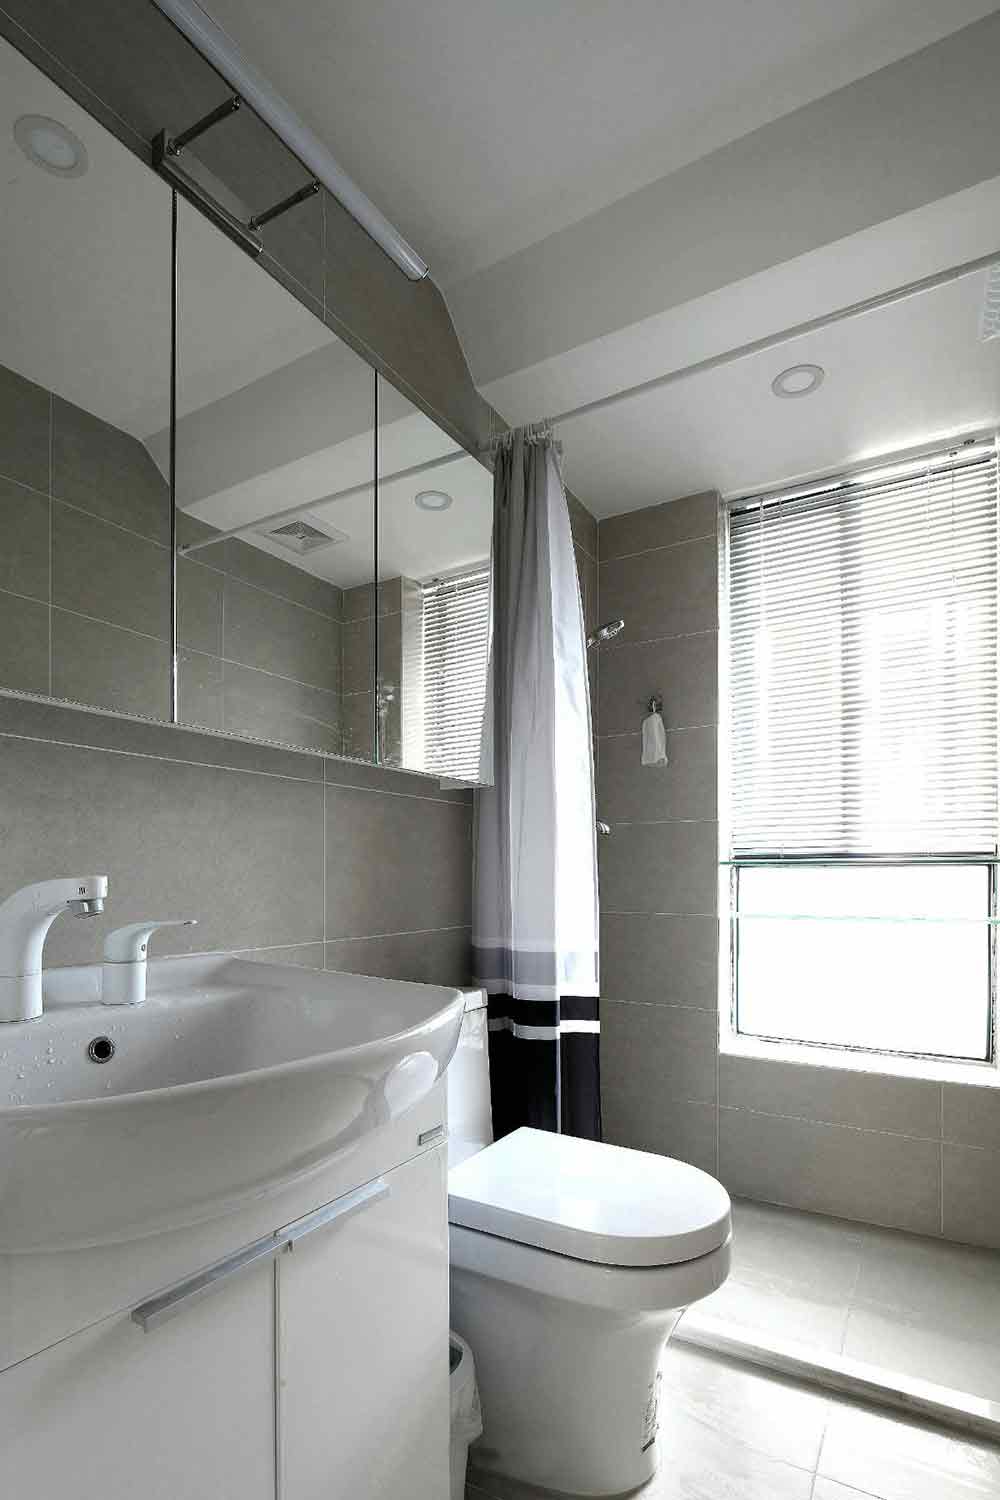 卫浴空间明亮简约，以拉帘代替实体隔断，使空间更自然开阔。